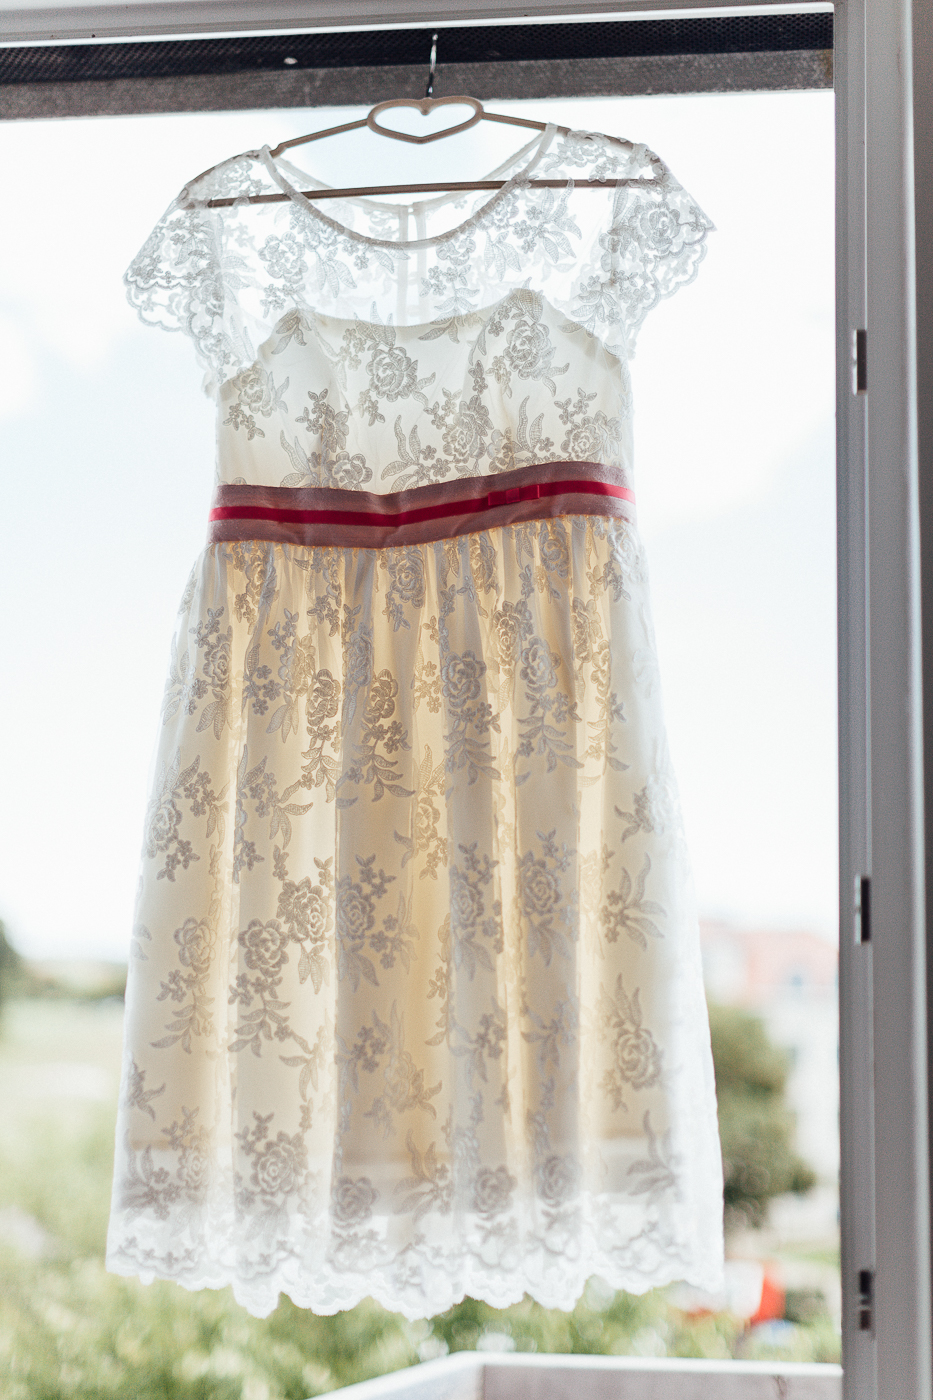 Brautkleid im Vintage-Stil hängt am Fenster